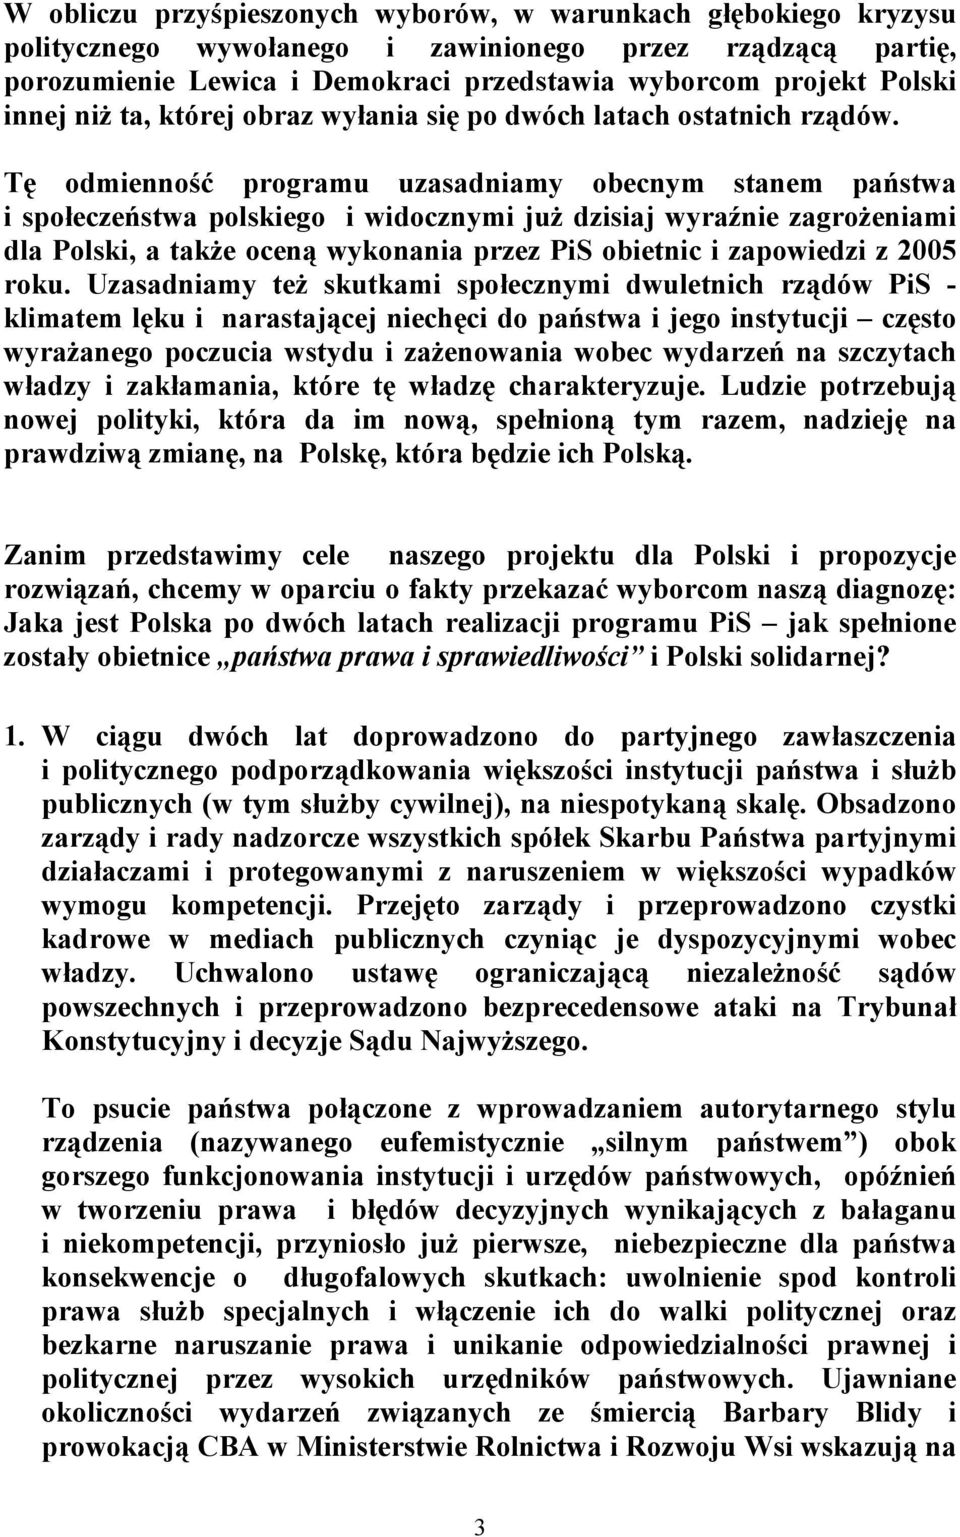 Tę odmienność programu uzasadniamy obecnym stanem państwa i społeczeństwa polskiego i widocznymi już dzisiaj wyraźnie zagrożeniami dla Polski, a także oceną wykonania przez PiS obietnic i zapowiedzi